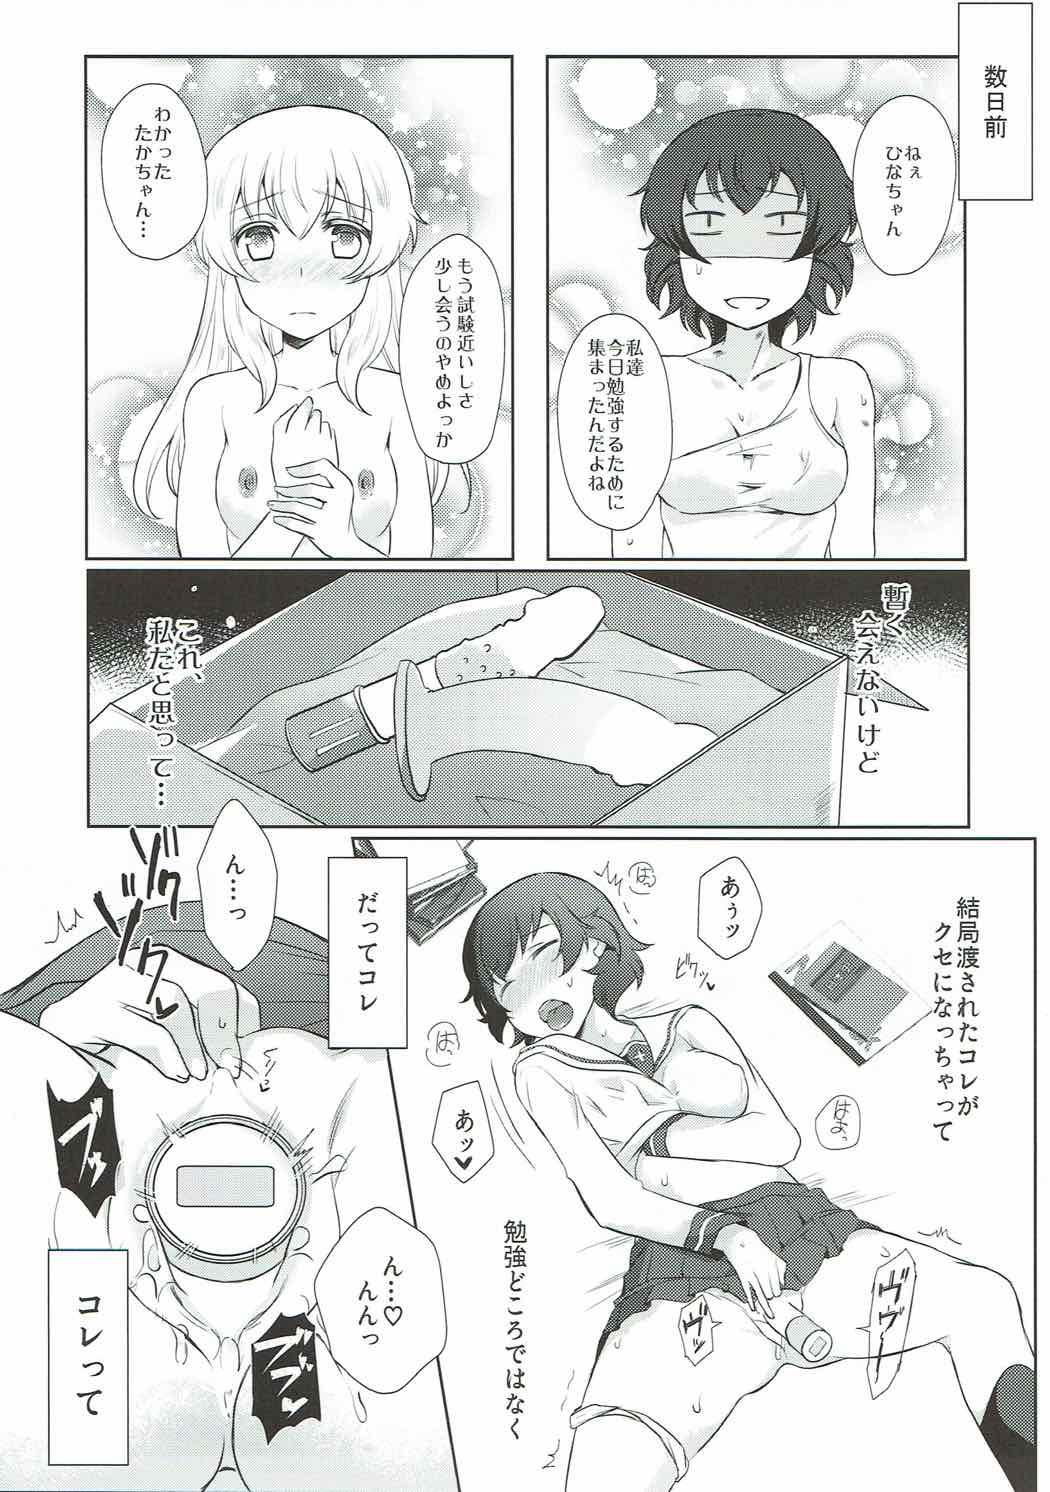 Brunet Dakara Watashi wa Sotsugyou dekinai! - Girls und panzer Casting - Page 4